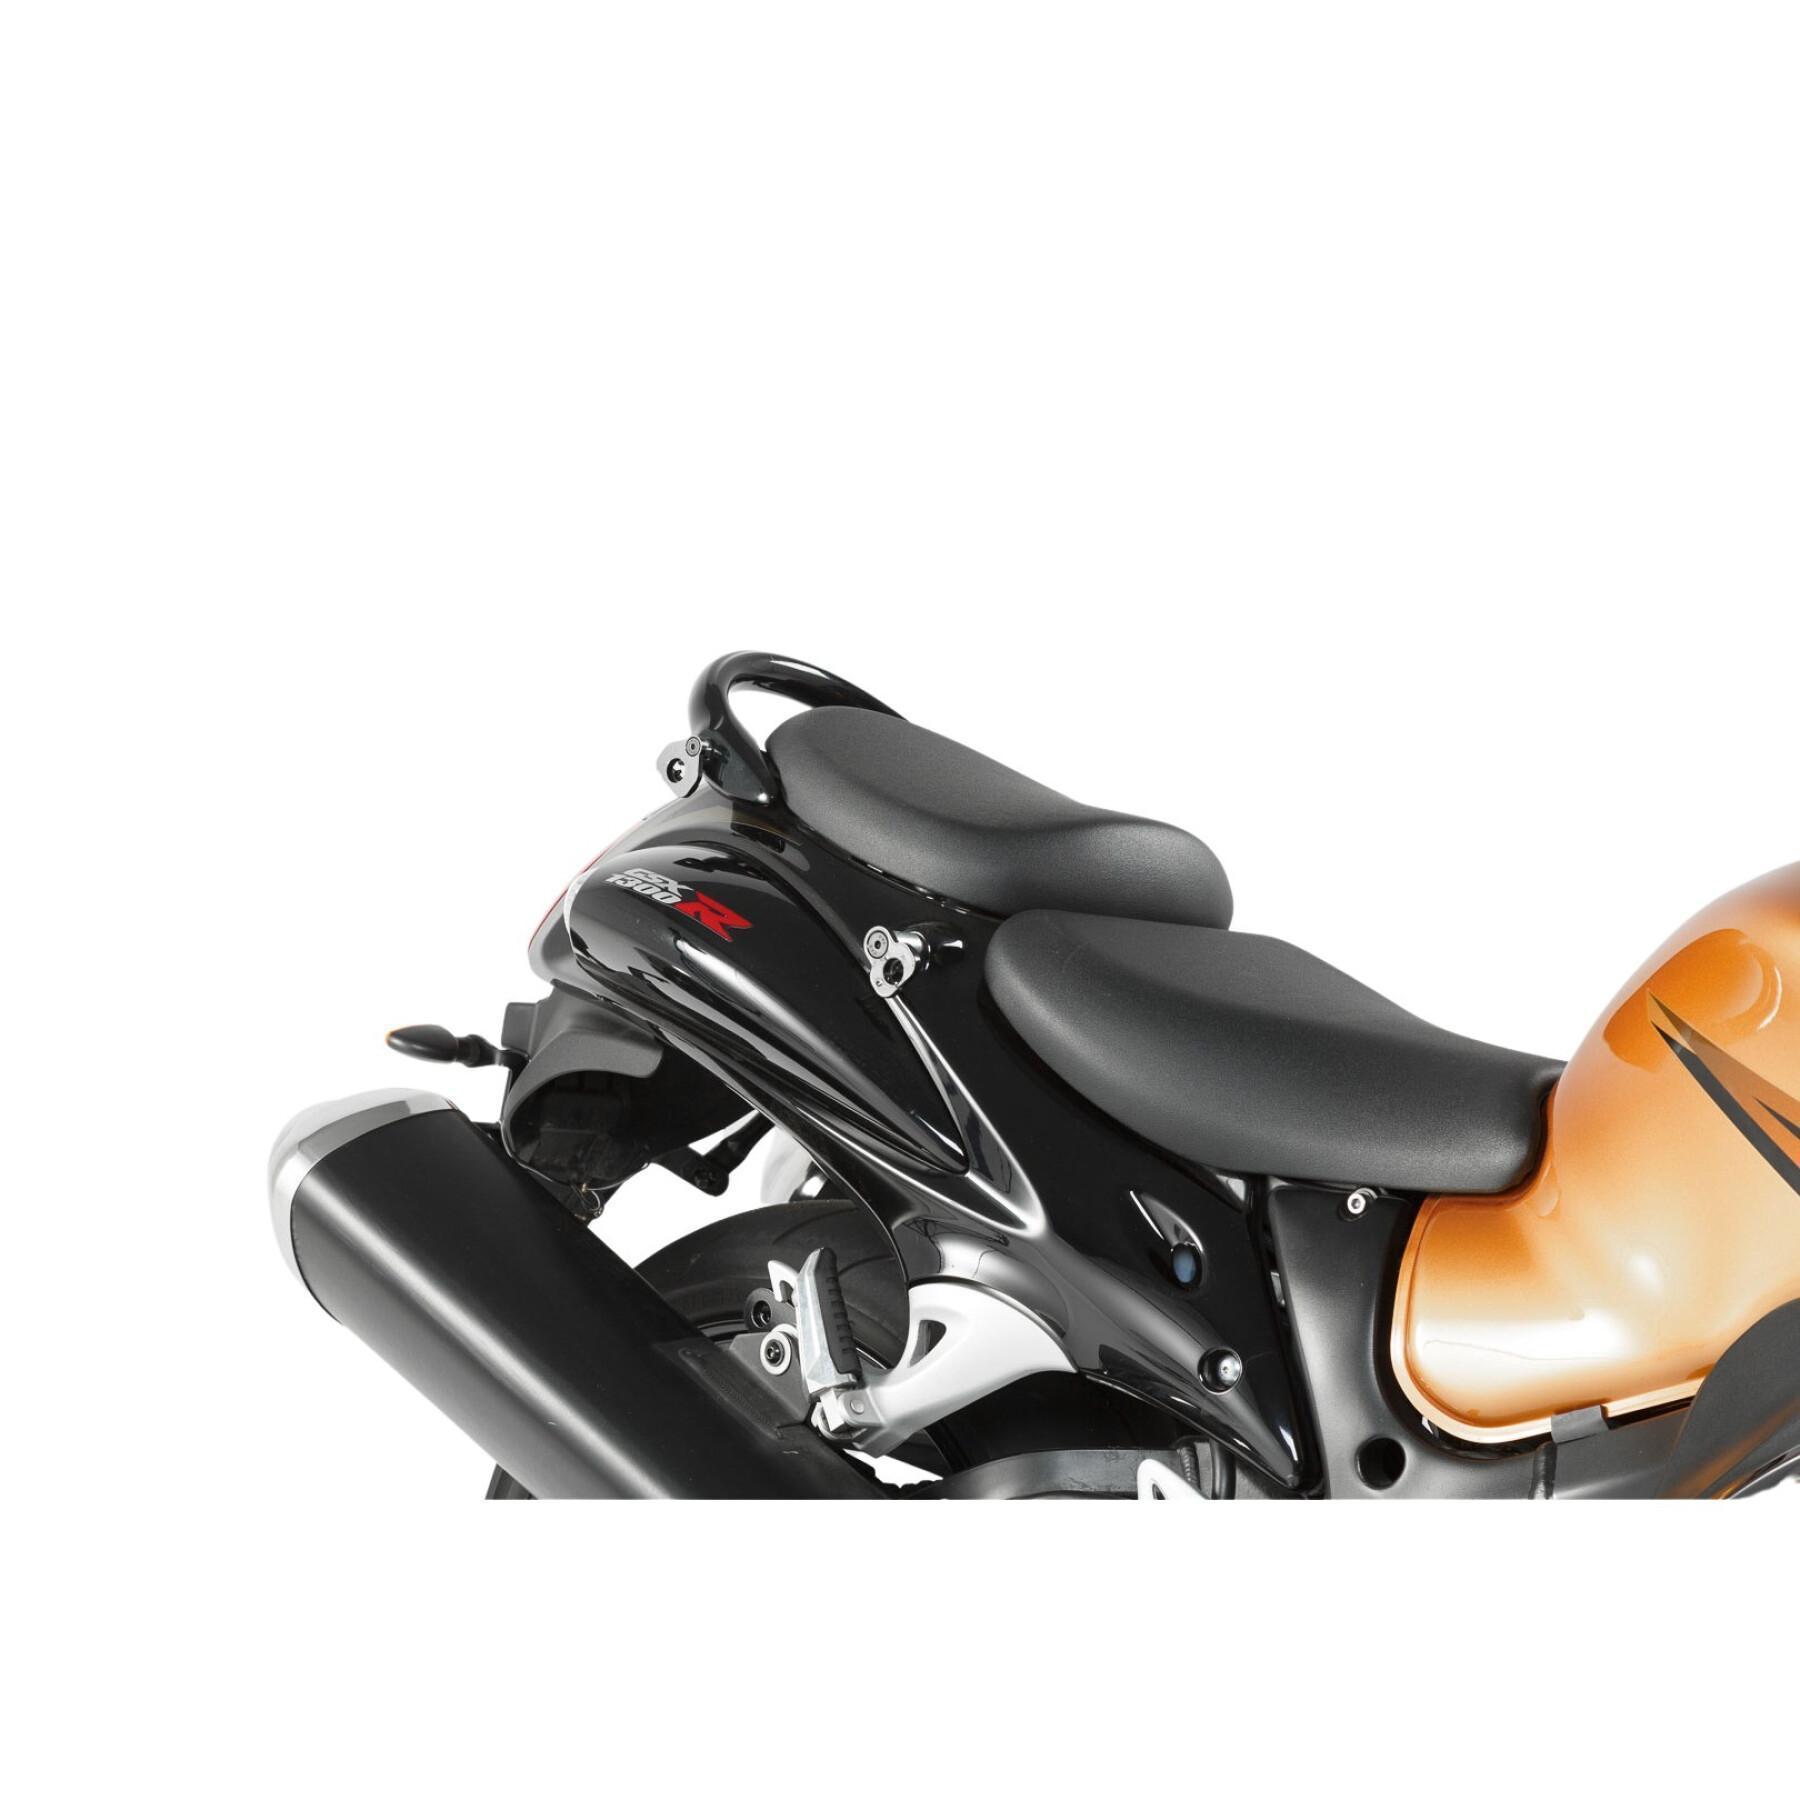 Sidostöd för motorcykel Sw-Motech Evo Suzuki Gsx 1300 R Hayabusa (08-)